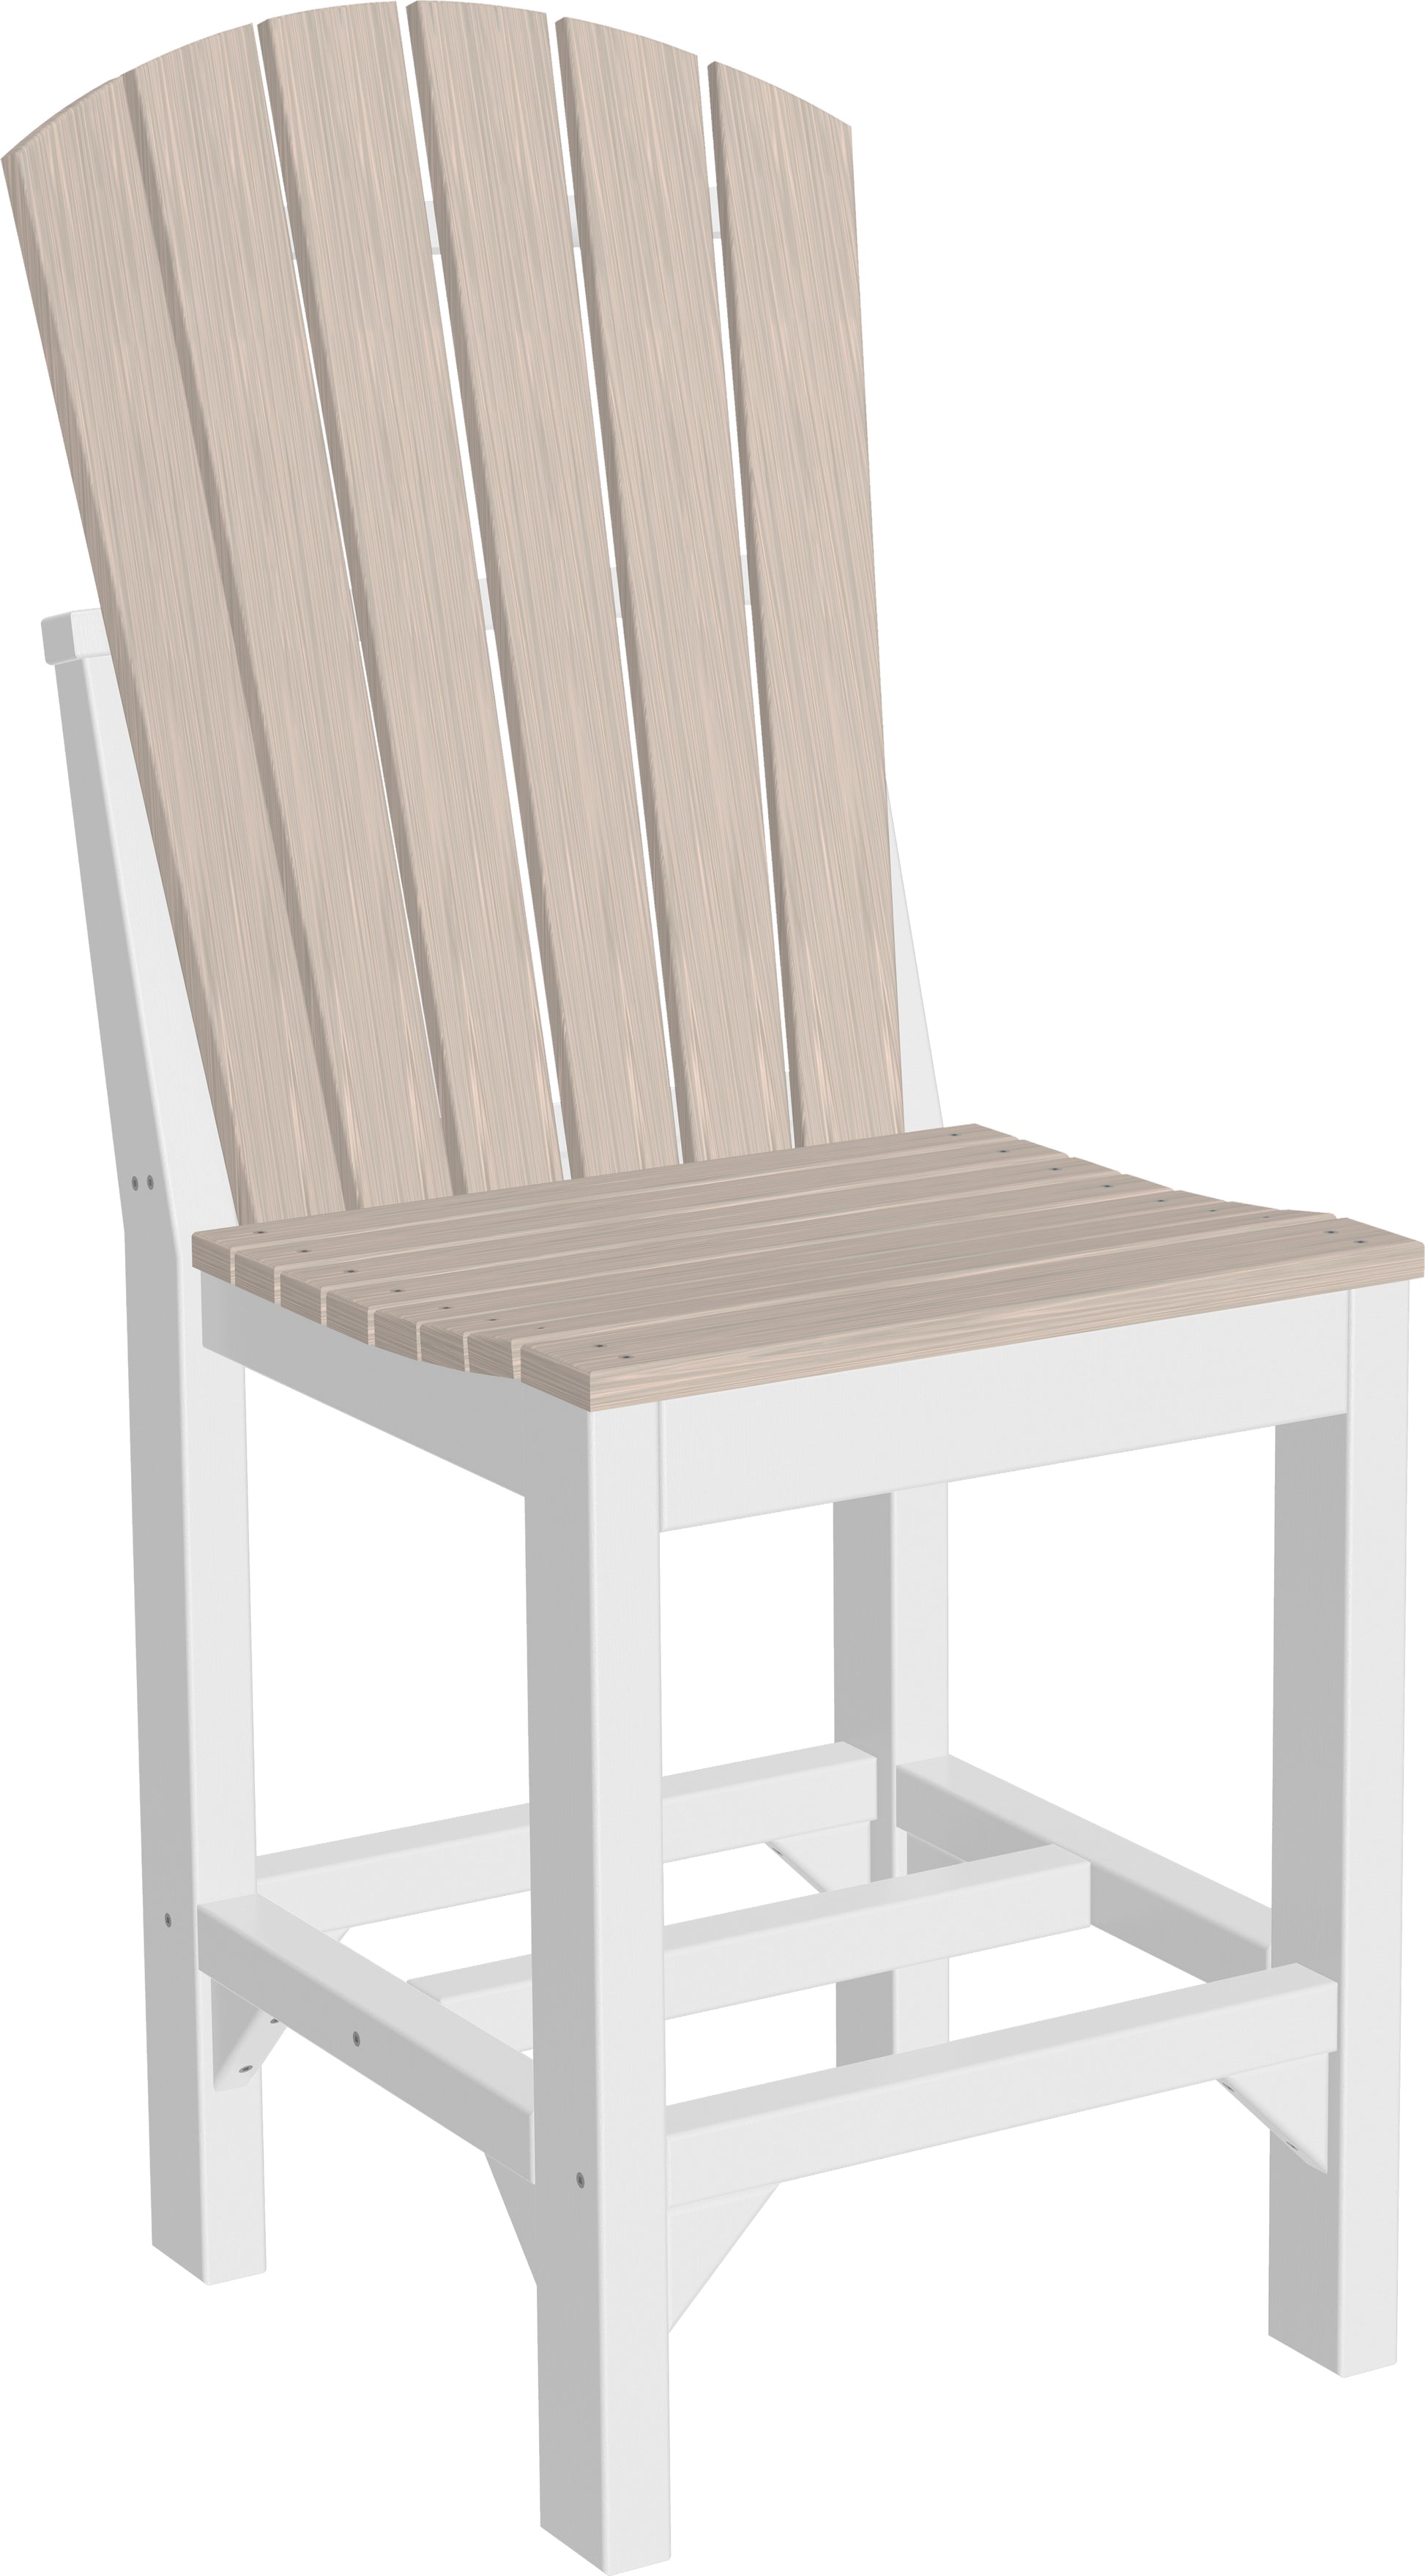 LuxCraft  Adirondack Side Chair Chair Luxcraft Birch / White Counter 